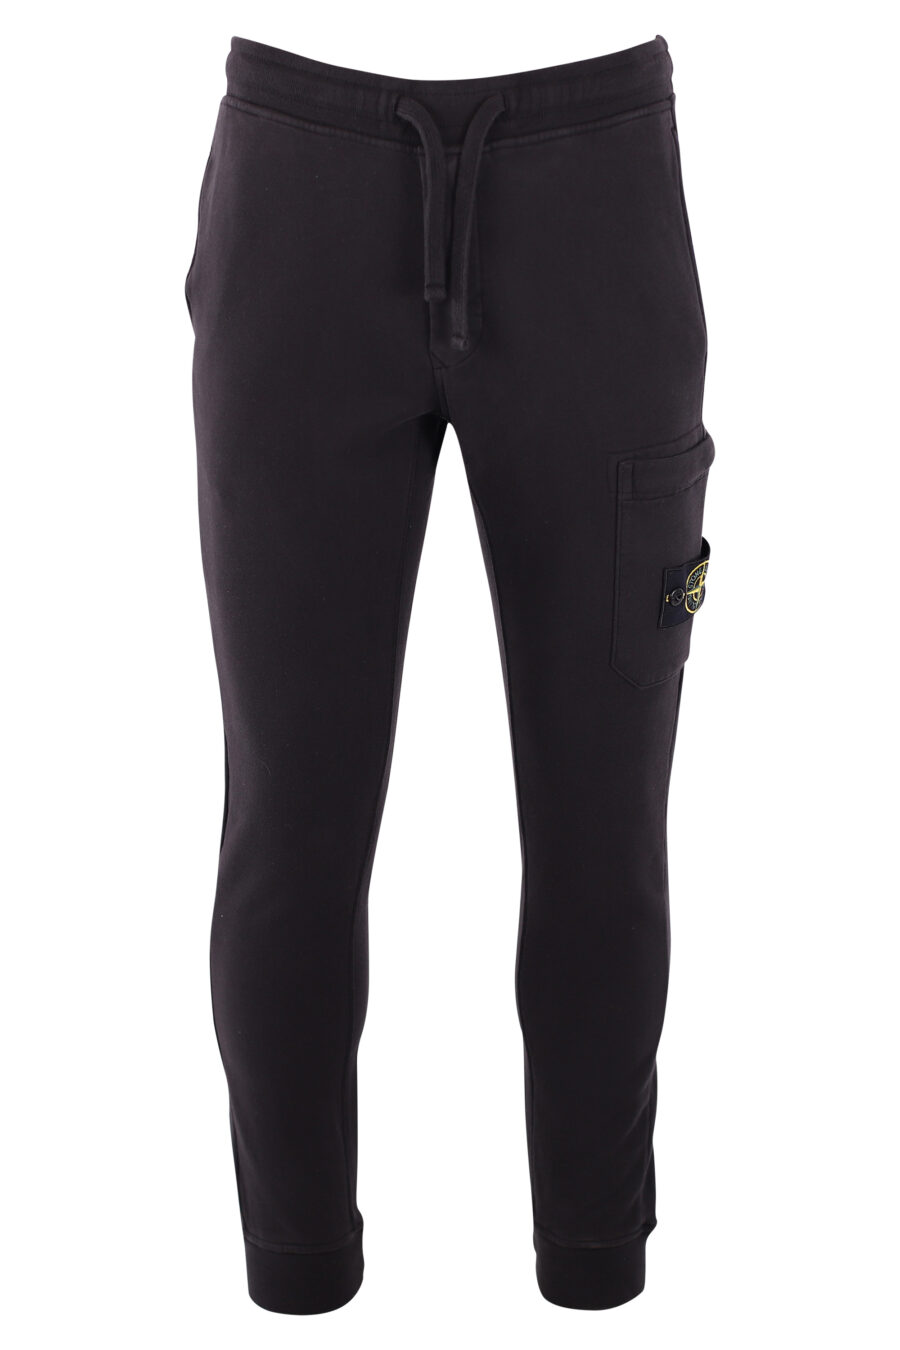 Pantalón de chándal negro con parche lateral - IMG 3213